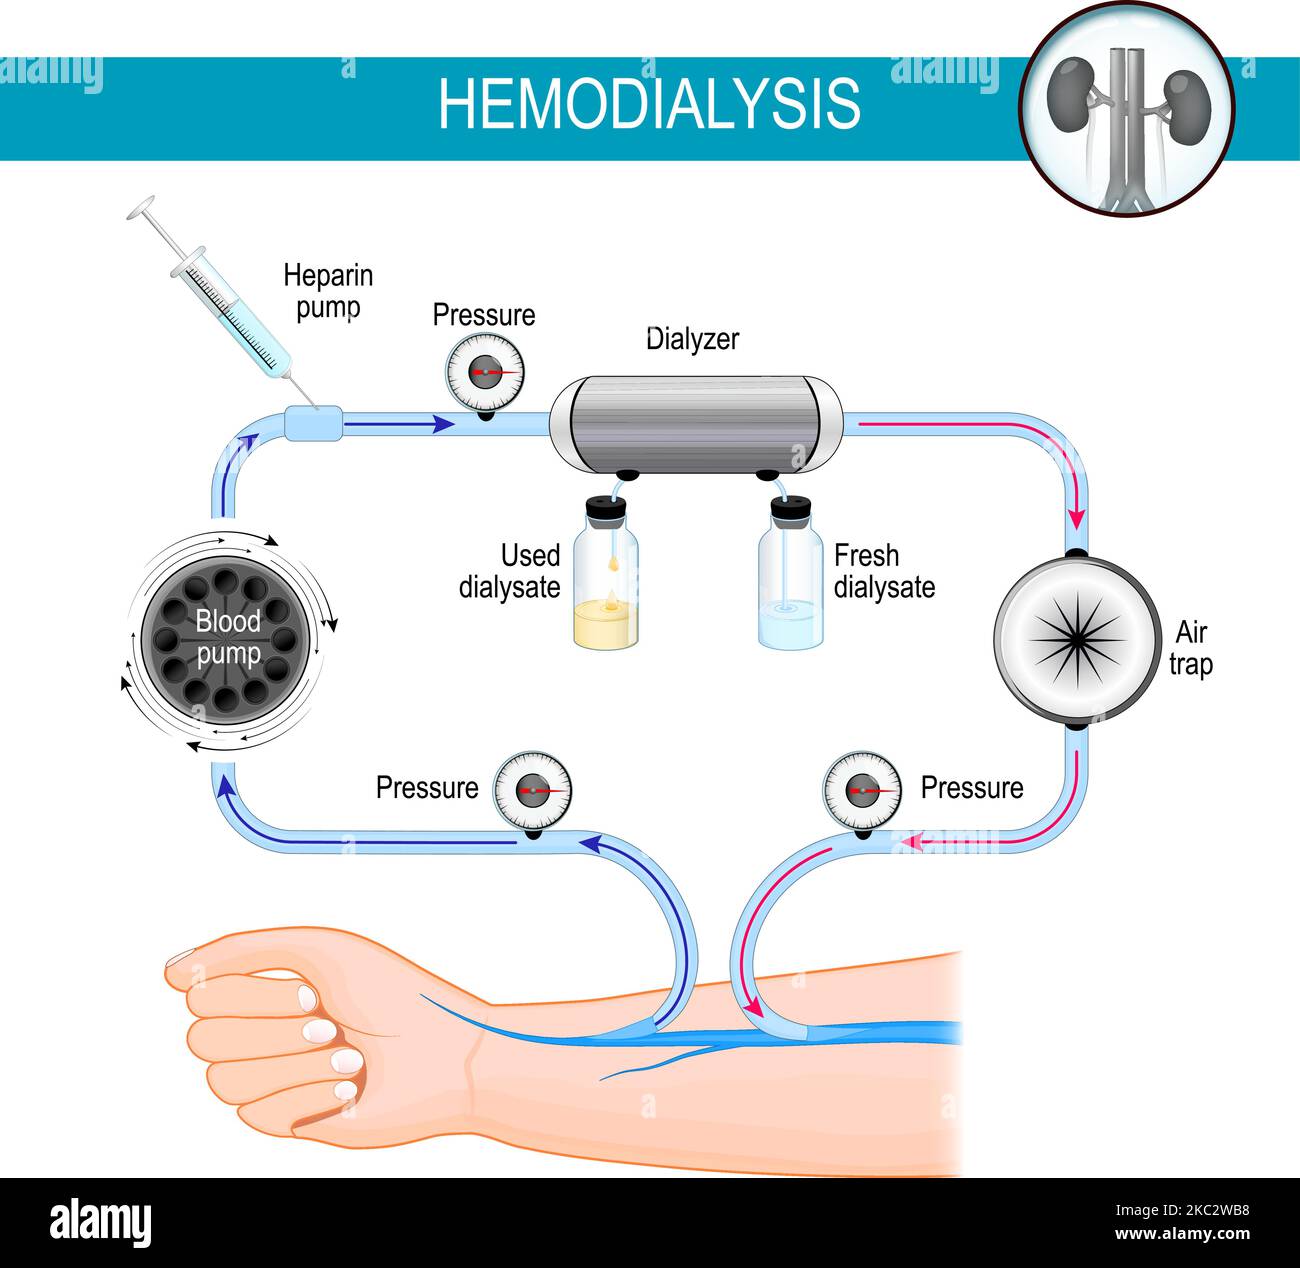 Le principe de la machine d'hémodialyse. Processus de dialyse. L'hémodialyse détourne le sang dans une machine externe, où il est filtré Illustration de Vecteur